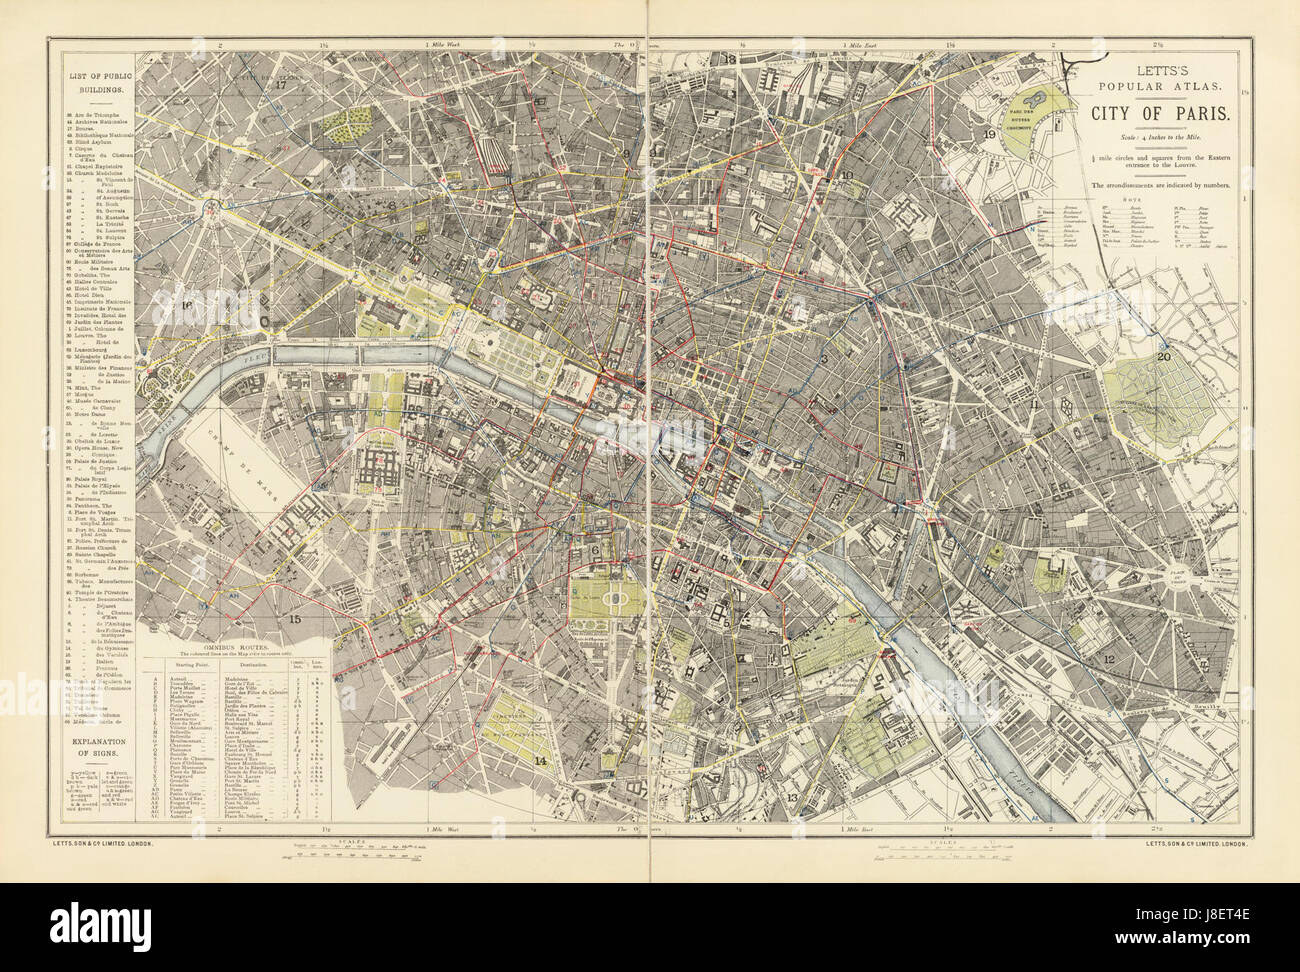 Letts, Stadt von Paris, 1883 David Rumsey Stockfoto